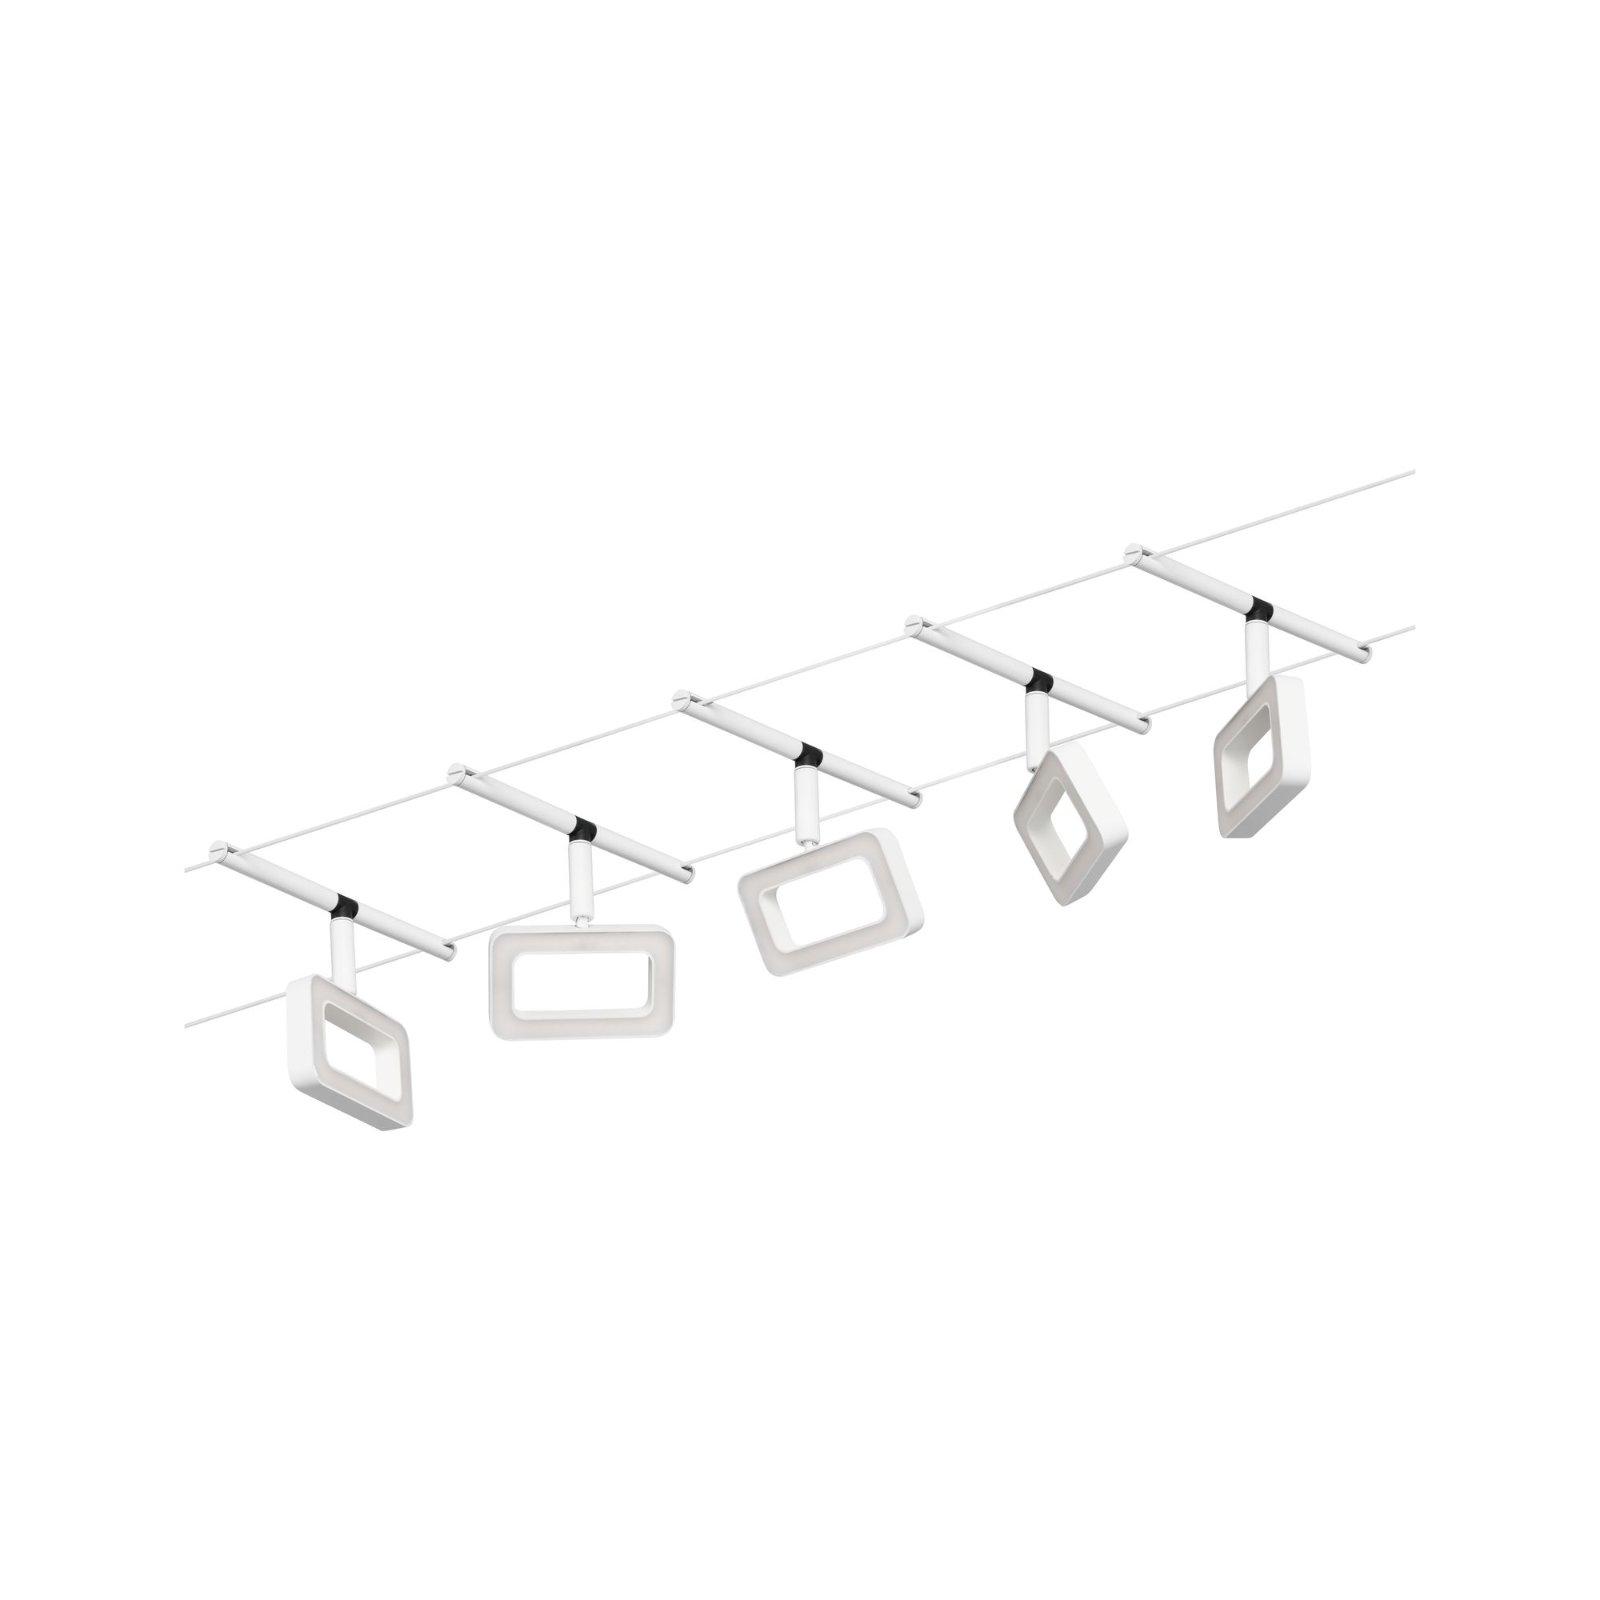 LED lankový systém Frame základní sada 5x4,8W 3000K 230/12V bílá mat/chrom - PAULMANN